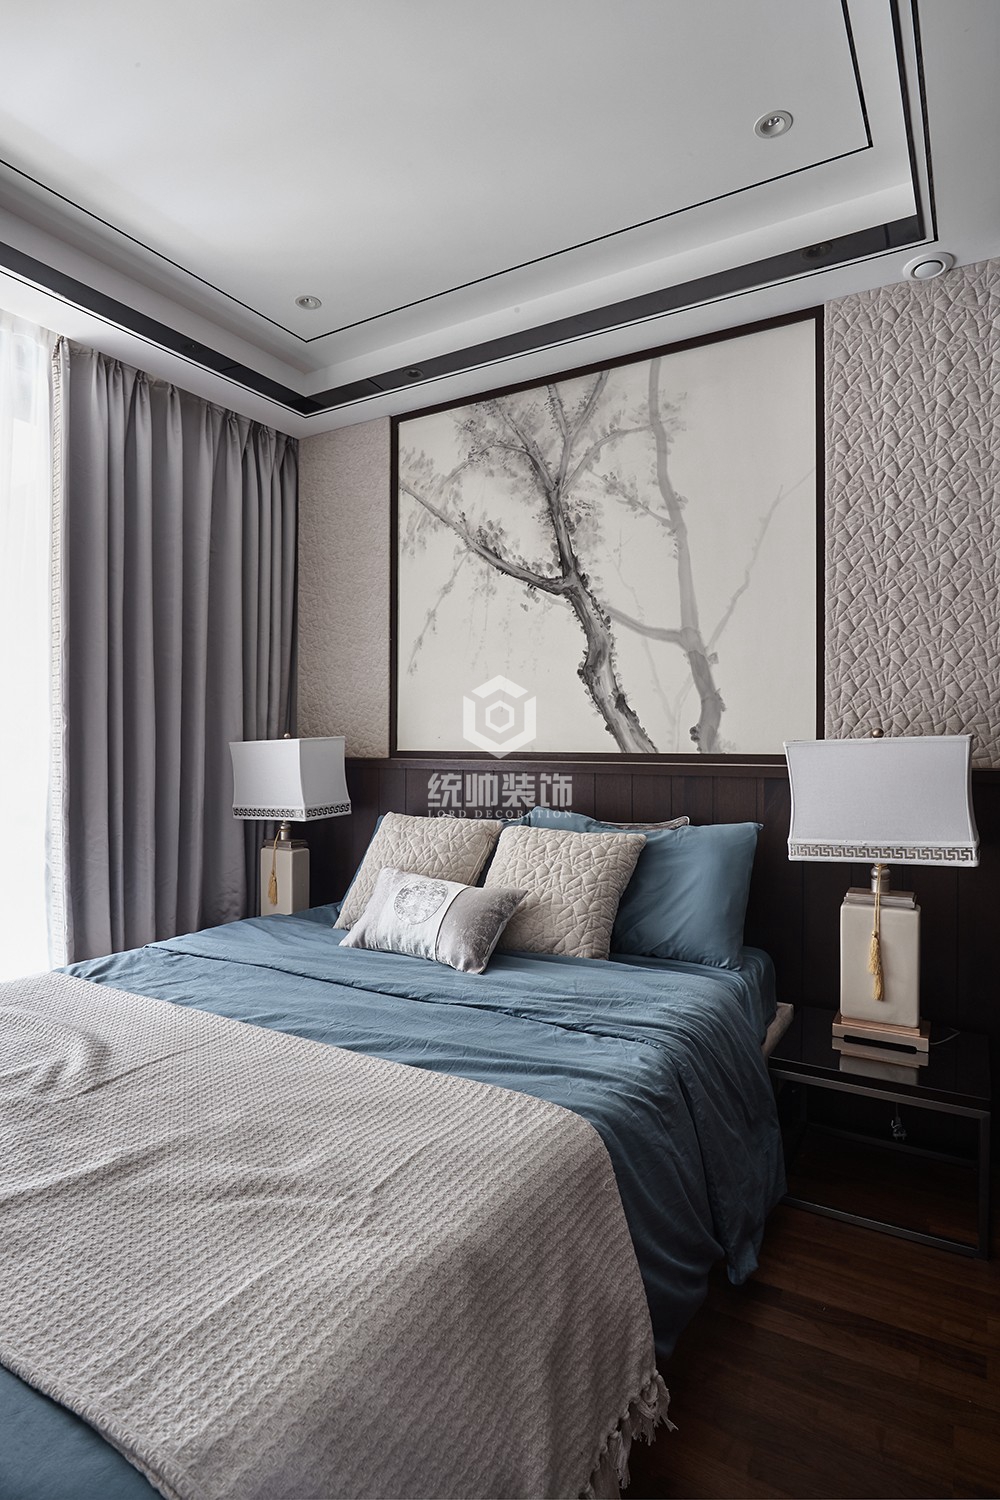 浦东新区金地天逸190平方新中式风格复式卧室装修效果图